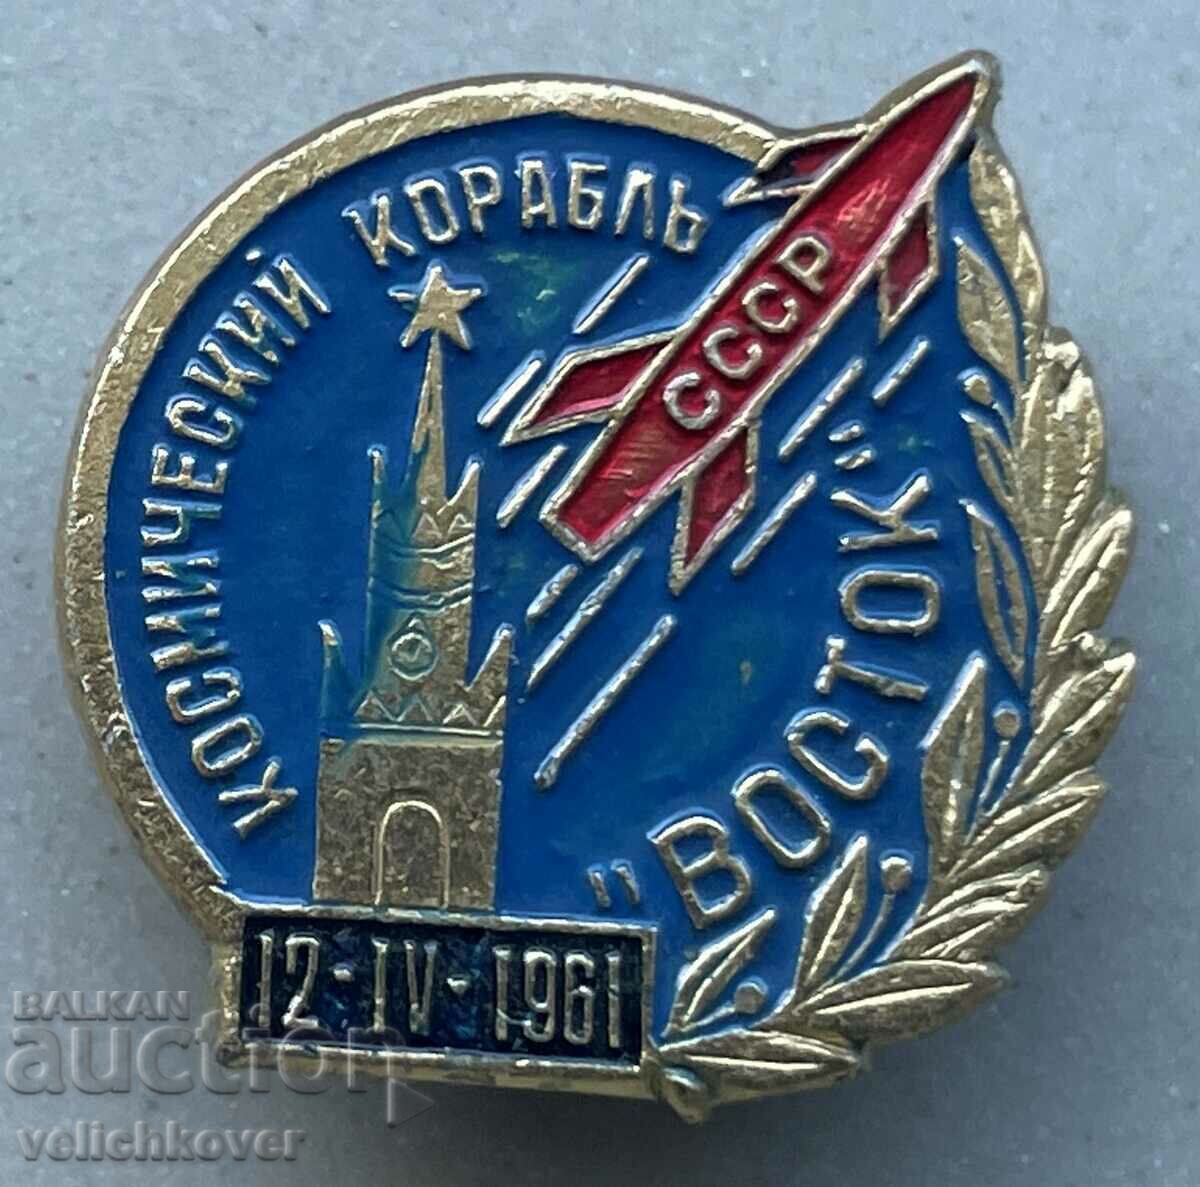 34040 Διαστημόπλοια ΕΣΣΔ Σειρά Vostok